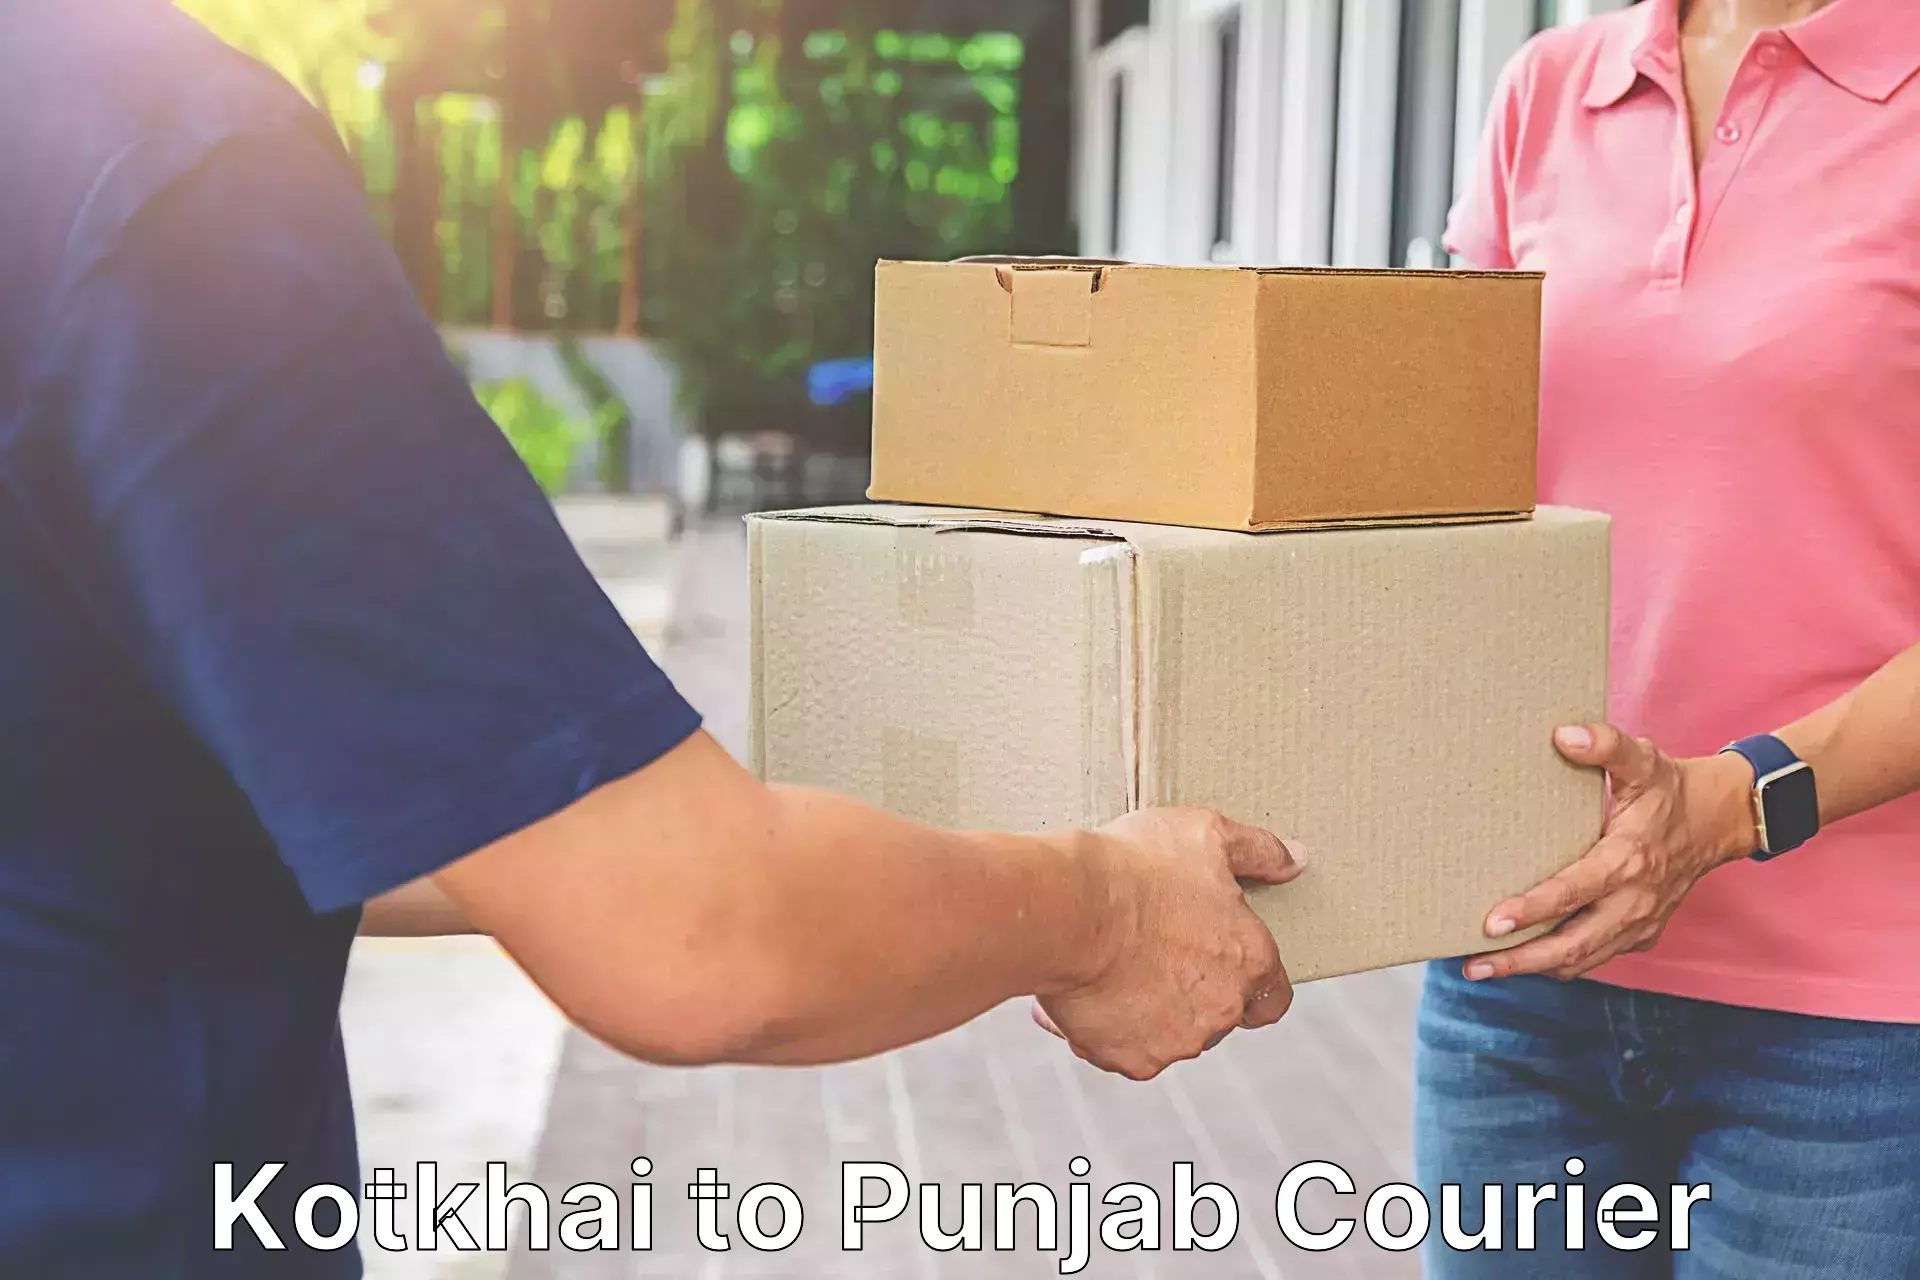 Multi-national courier services Kotkhai to Jalandhar